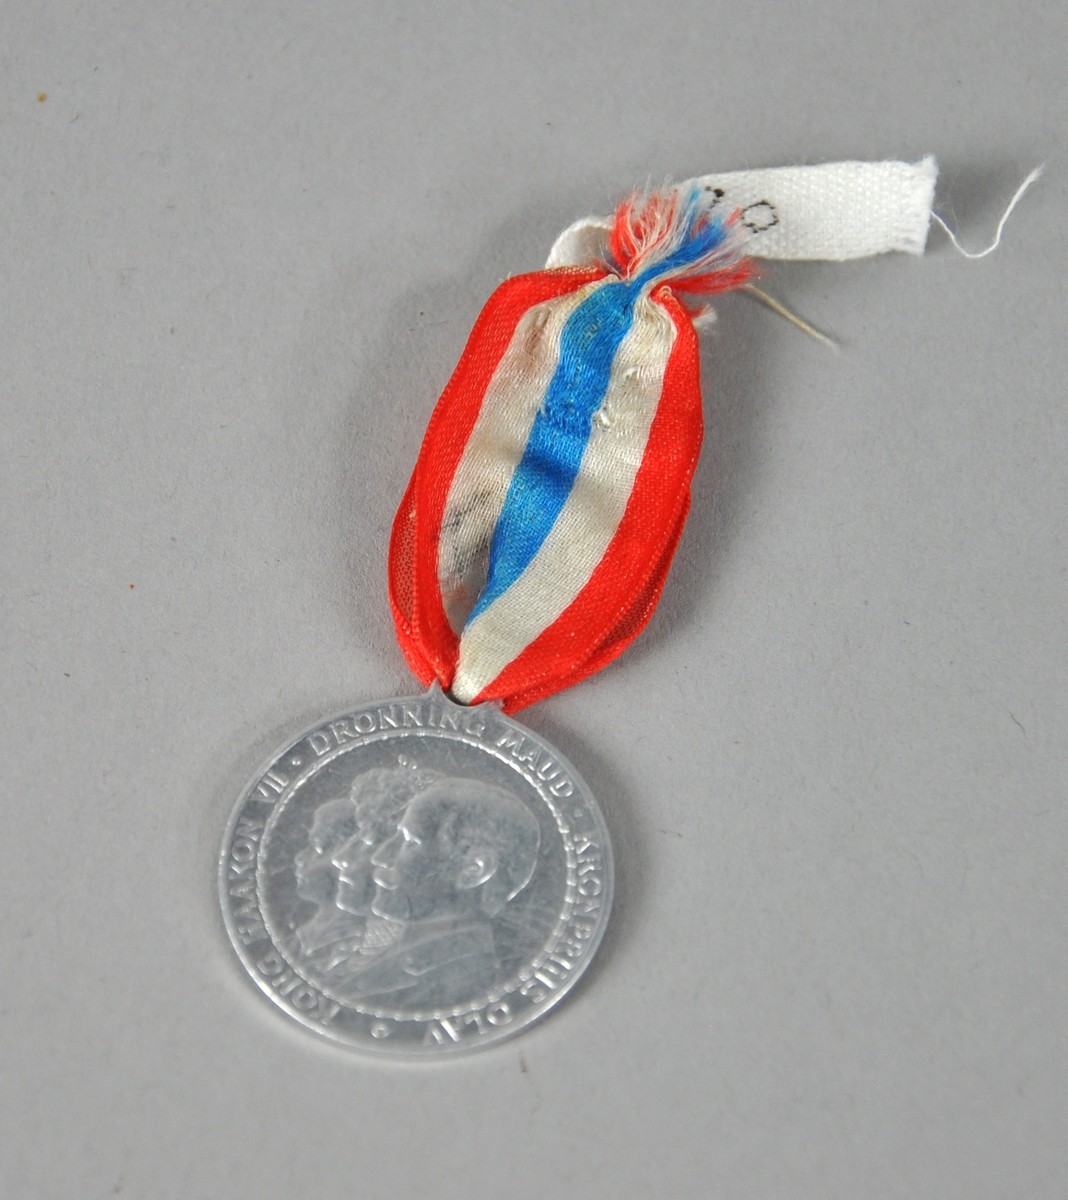 Medalje av aluminium med sløyfe i rødt, hvitt og blått. Medaljen viser portrettene av kong Håkon, dronning Maud og kronprins Olav, med tekst rundt kanten.